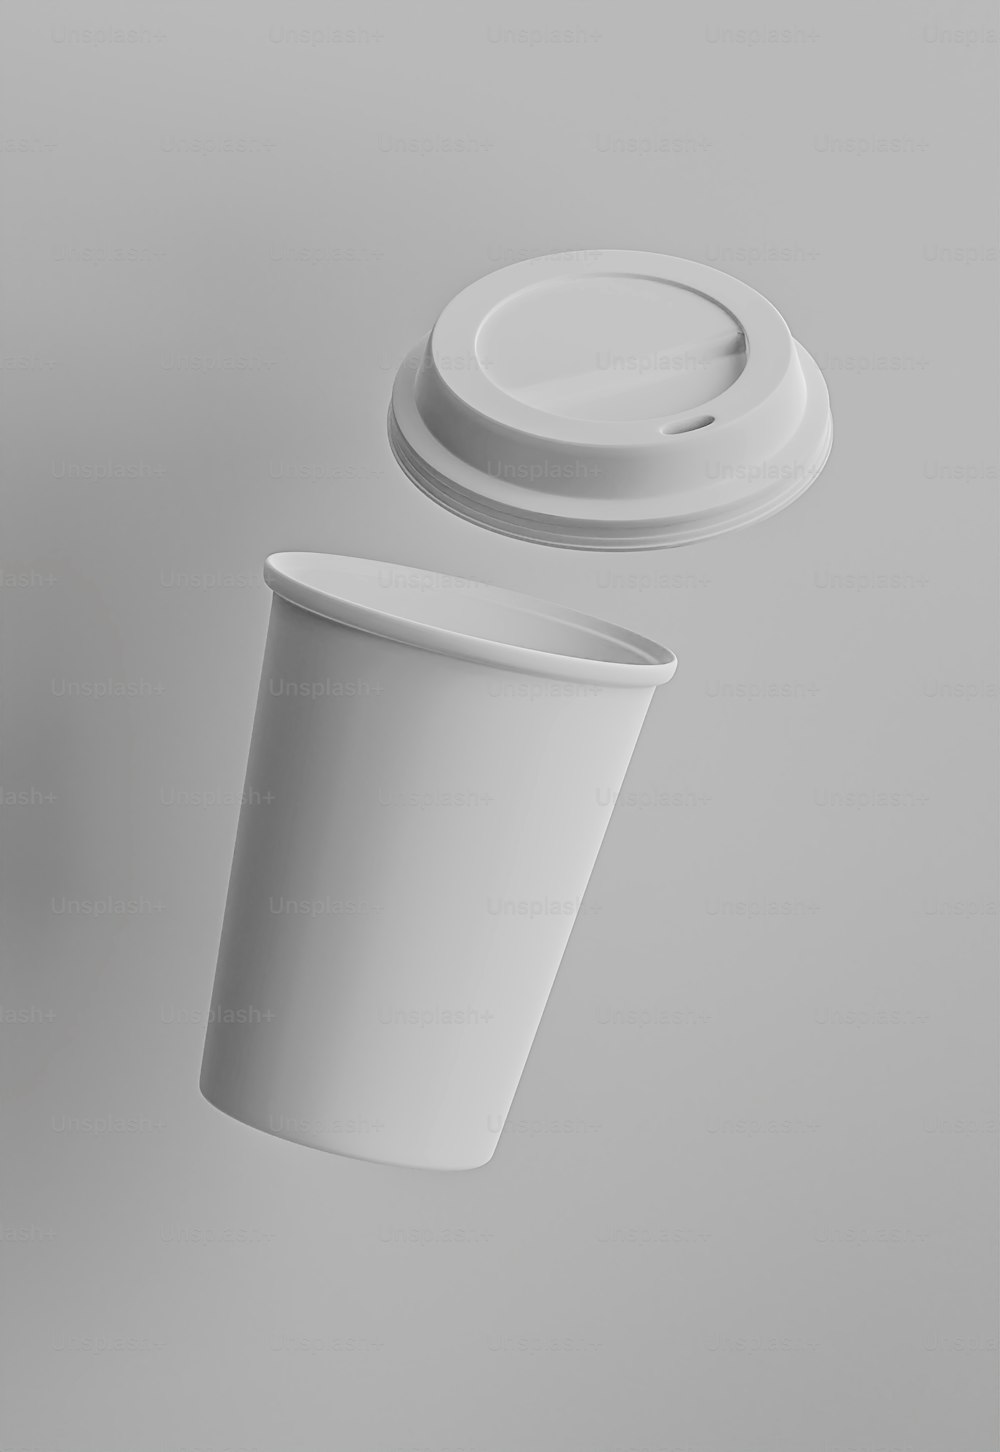 뚜껑이 있는 흰색 컵과 뚜껑이 있는 흰색 컵